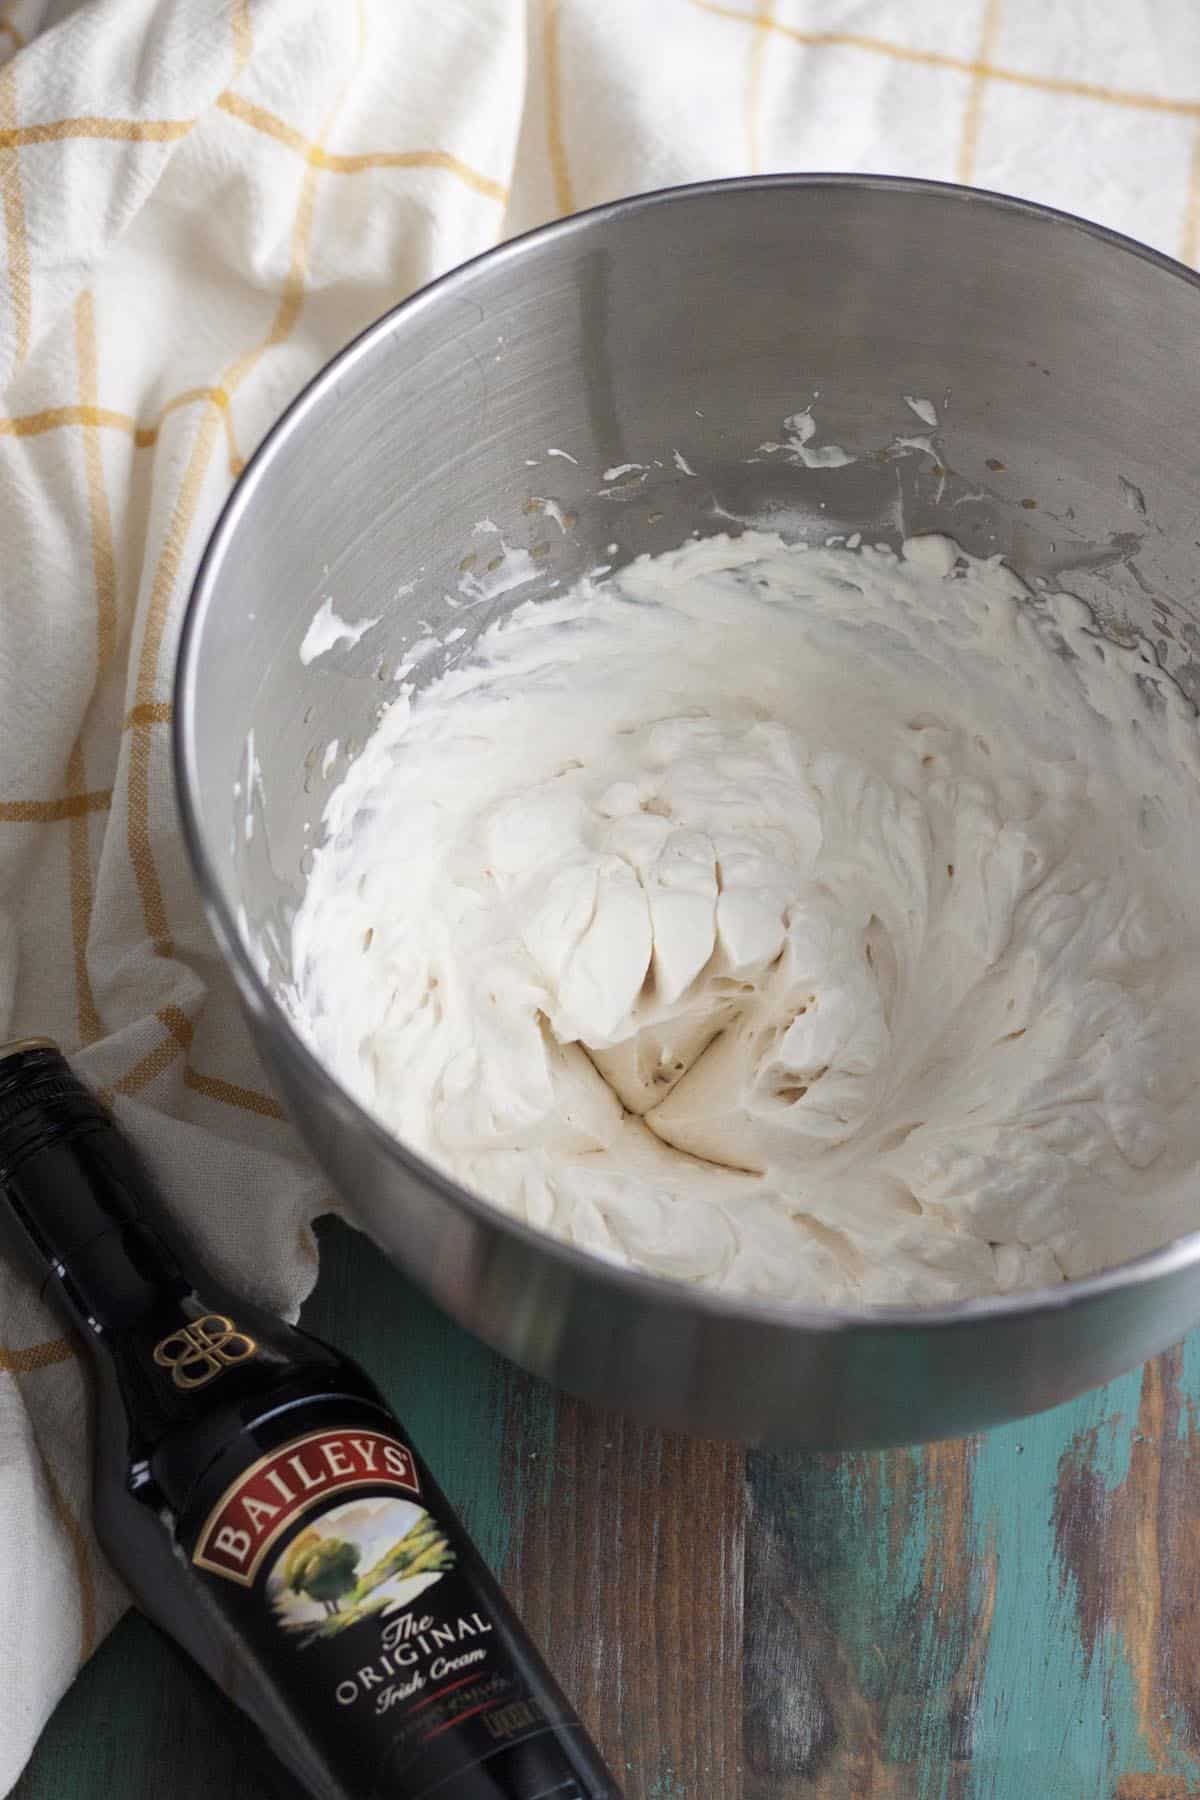 Homemade Irish cream whipped cream in a bowl